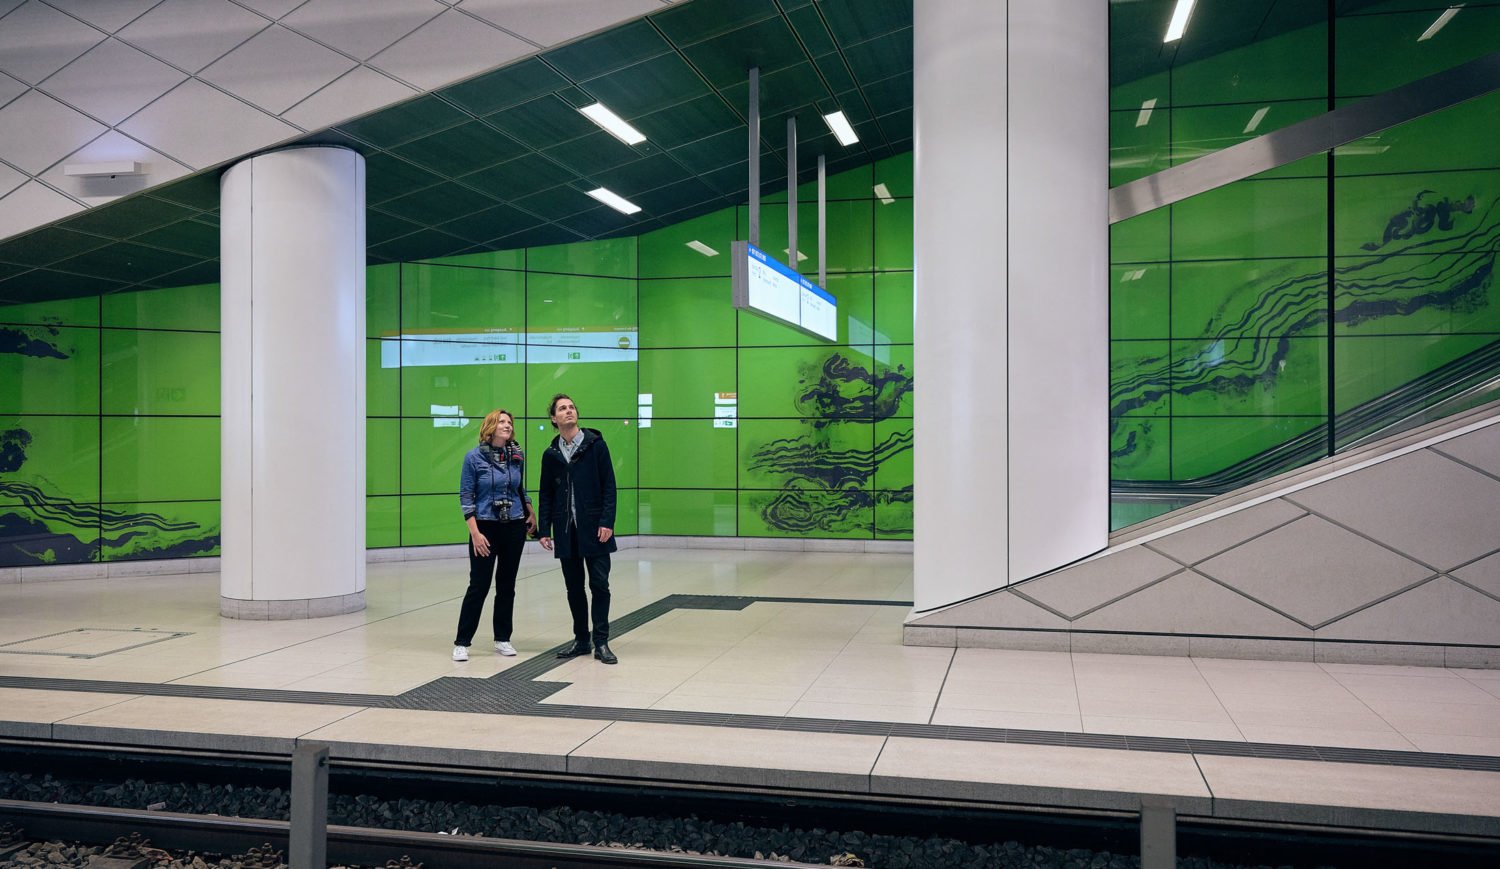 Am Bahnhof Graf-Adolf-Platz begleiten euch grüne Wände in Achat-Stein-Optik zum Bahnsteig. Das Kunstwerk stammt vom Künstler Manuel Franke © Düsseldorf Tourismus – Markus Luigs